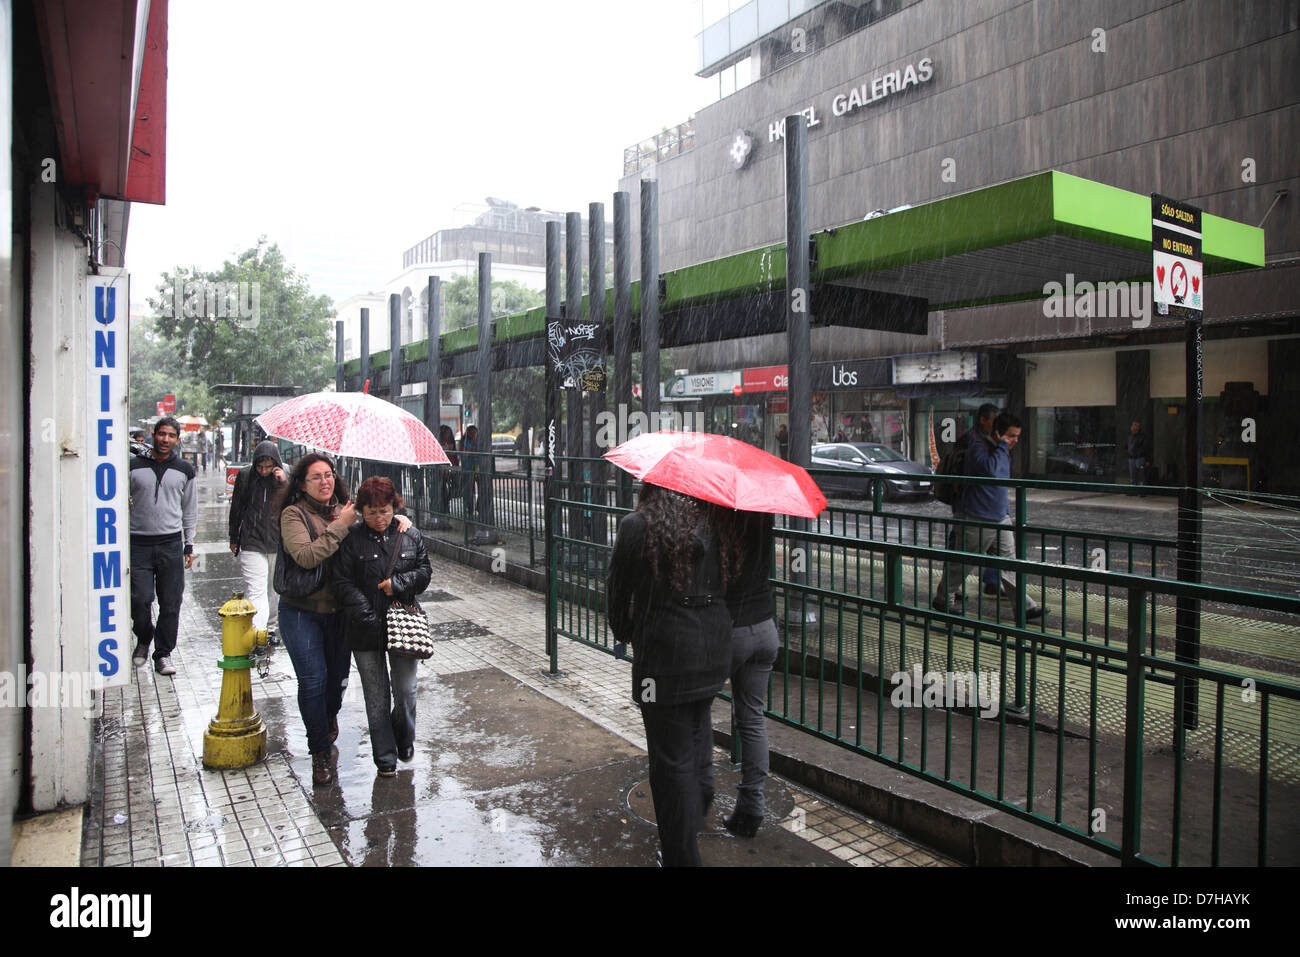 Lluvia en Santiago: ¿A qué hora comenzará a llover este miércoles en la RM?